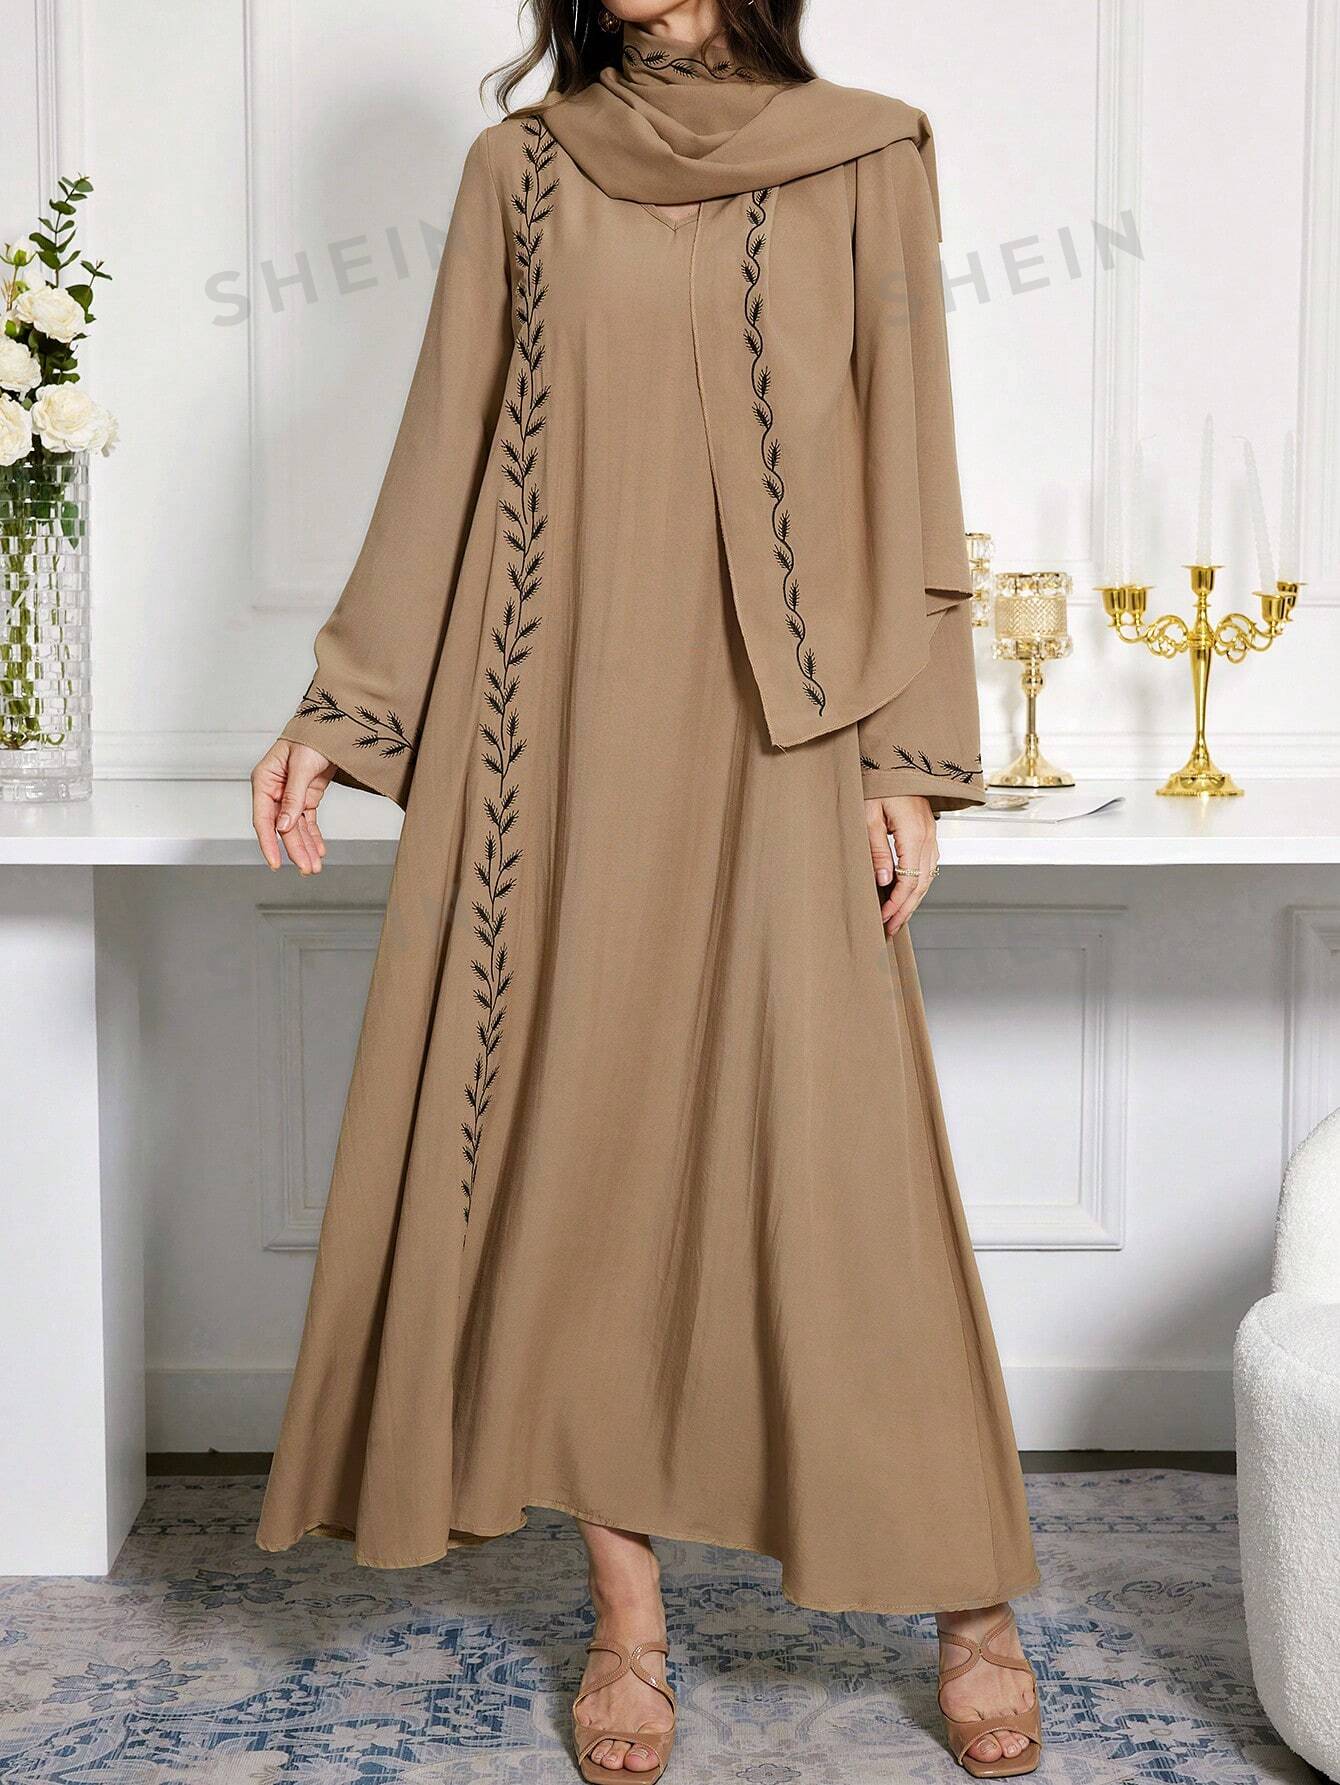 SHEIN Najma женское платье в арабском стиле с v-образным вырезом и вышивкой, коричневый